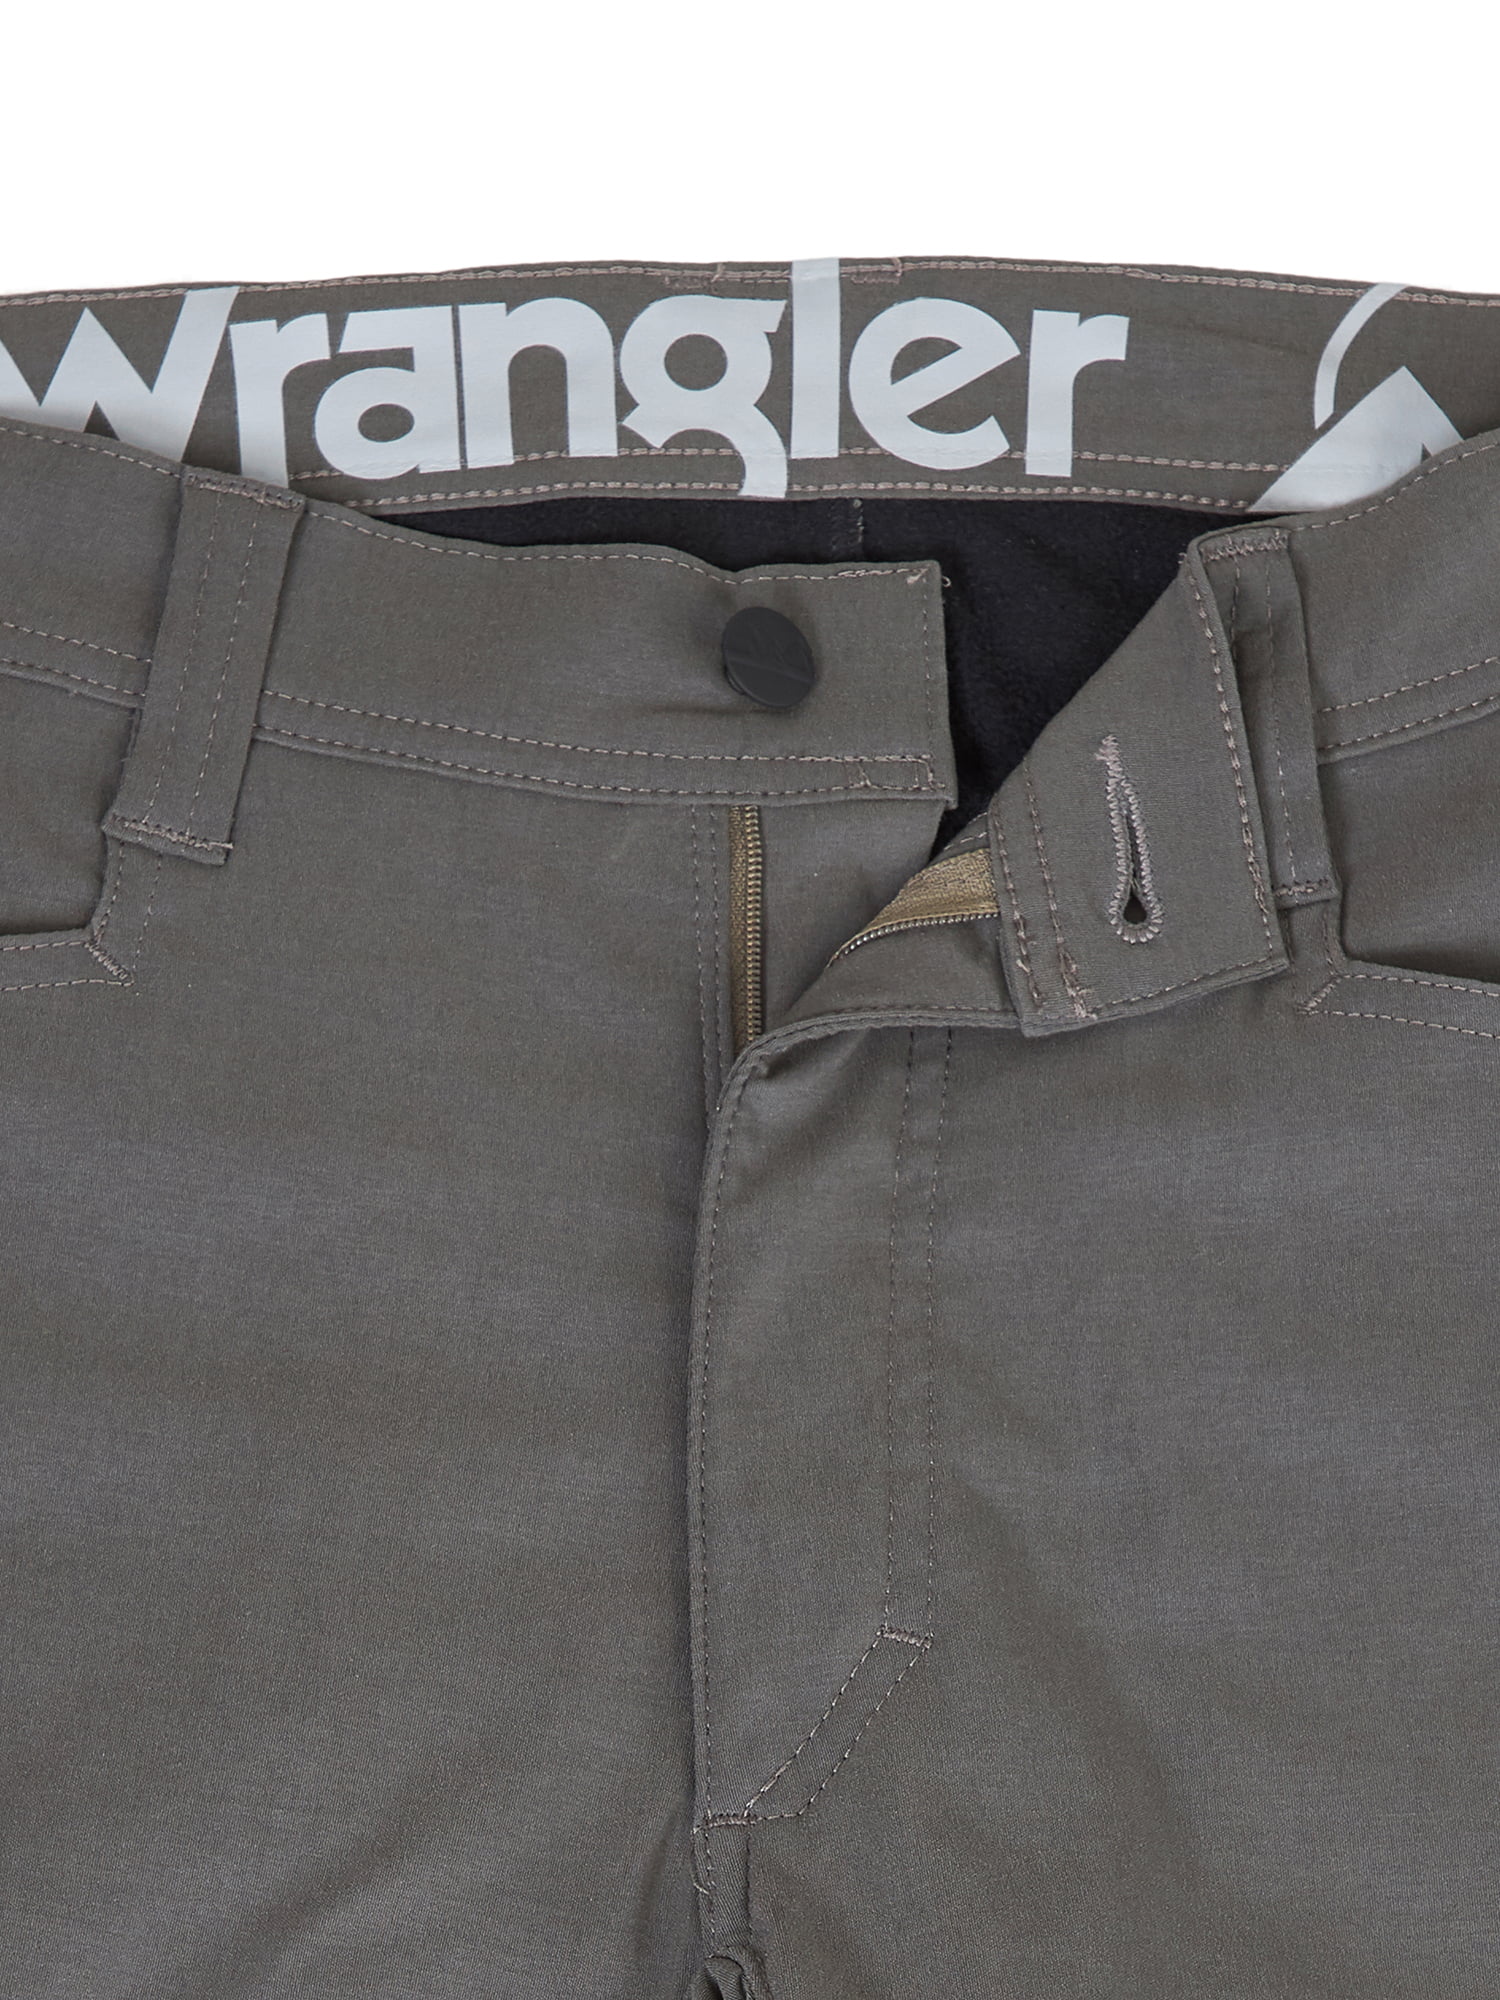 wrangler fleece lined cargo pants walmart